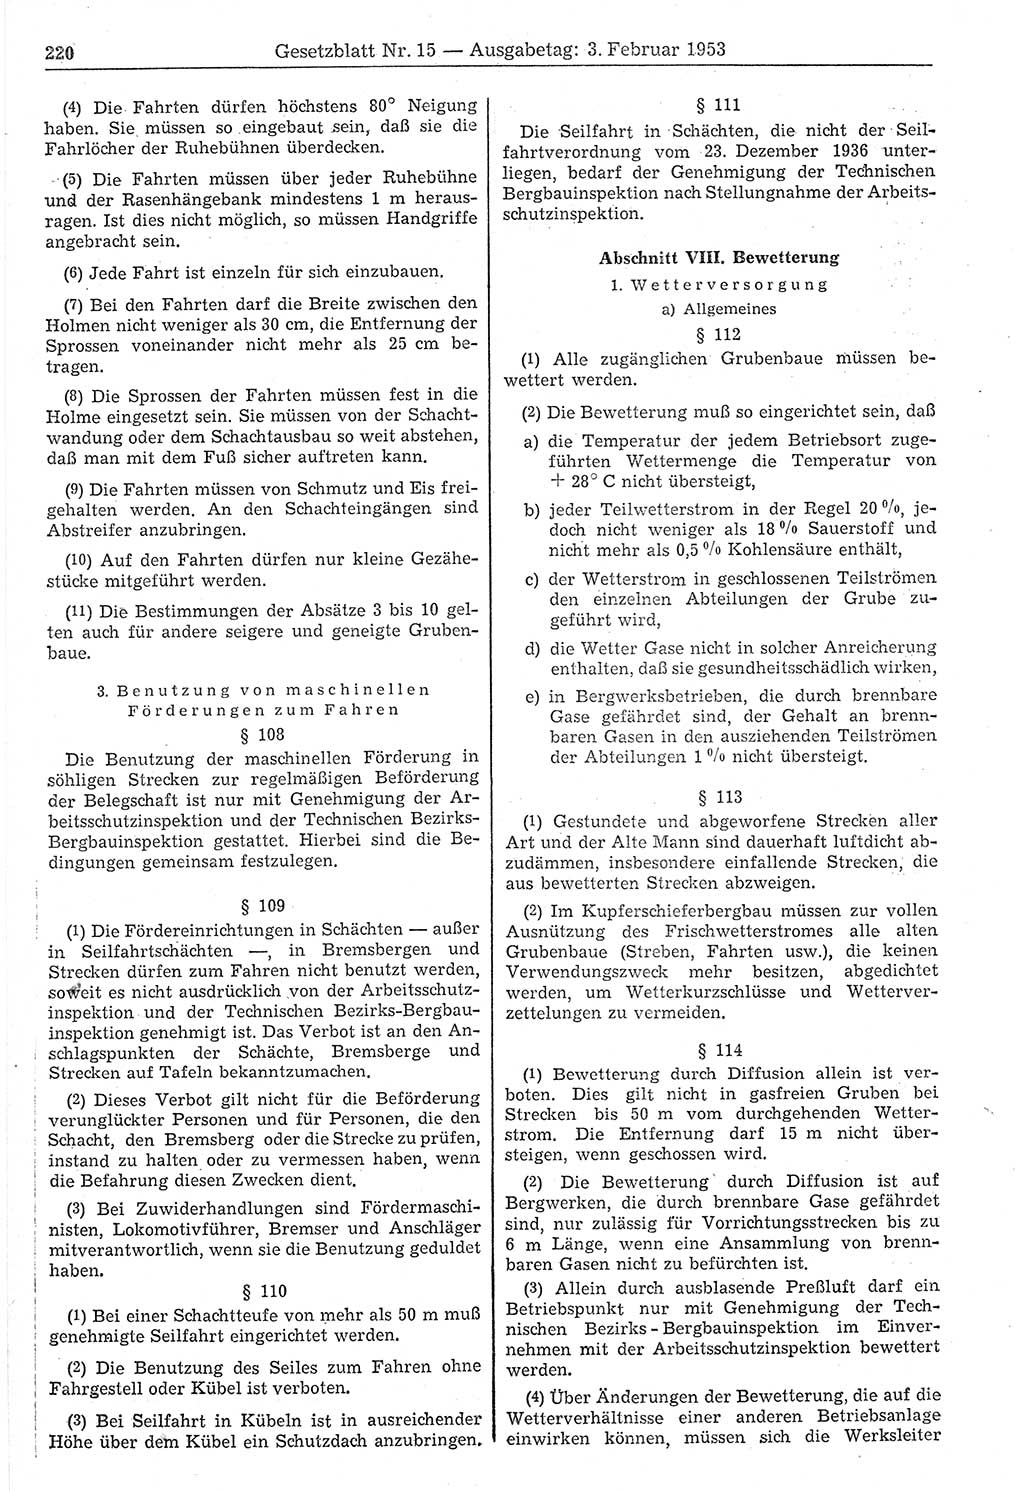 Gesetzblatt (GBl.) der Deutschen Demokratischen Republik (DDR) 1953, Seite 220 (GBl. DDR 1953, S. 220)